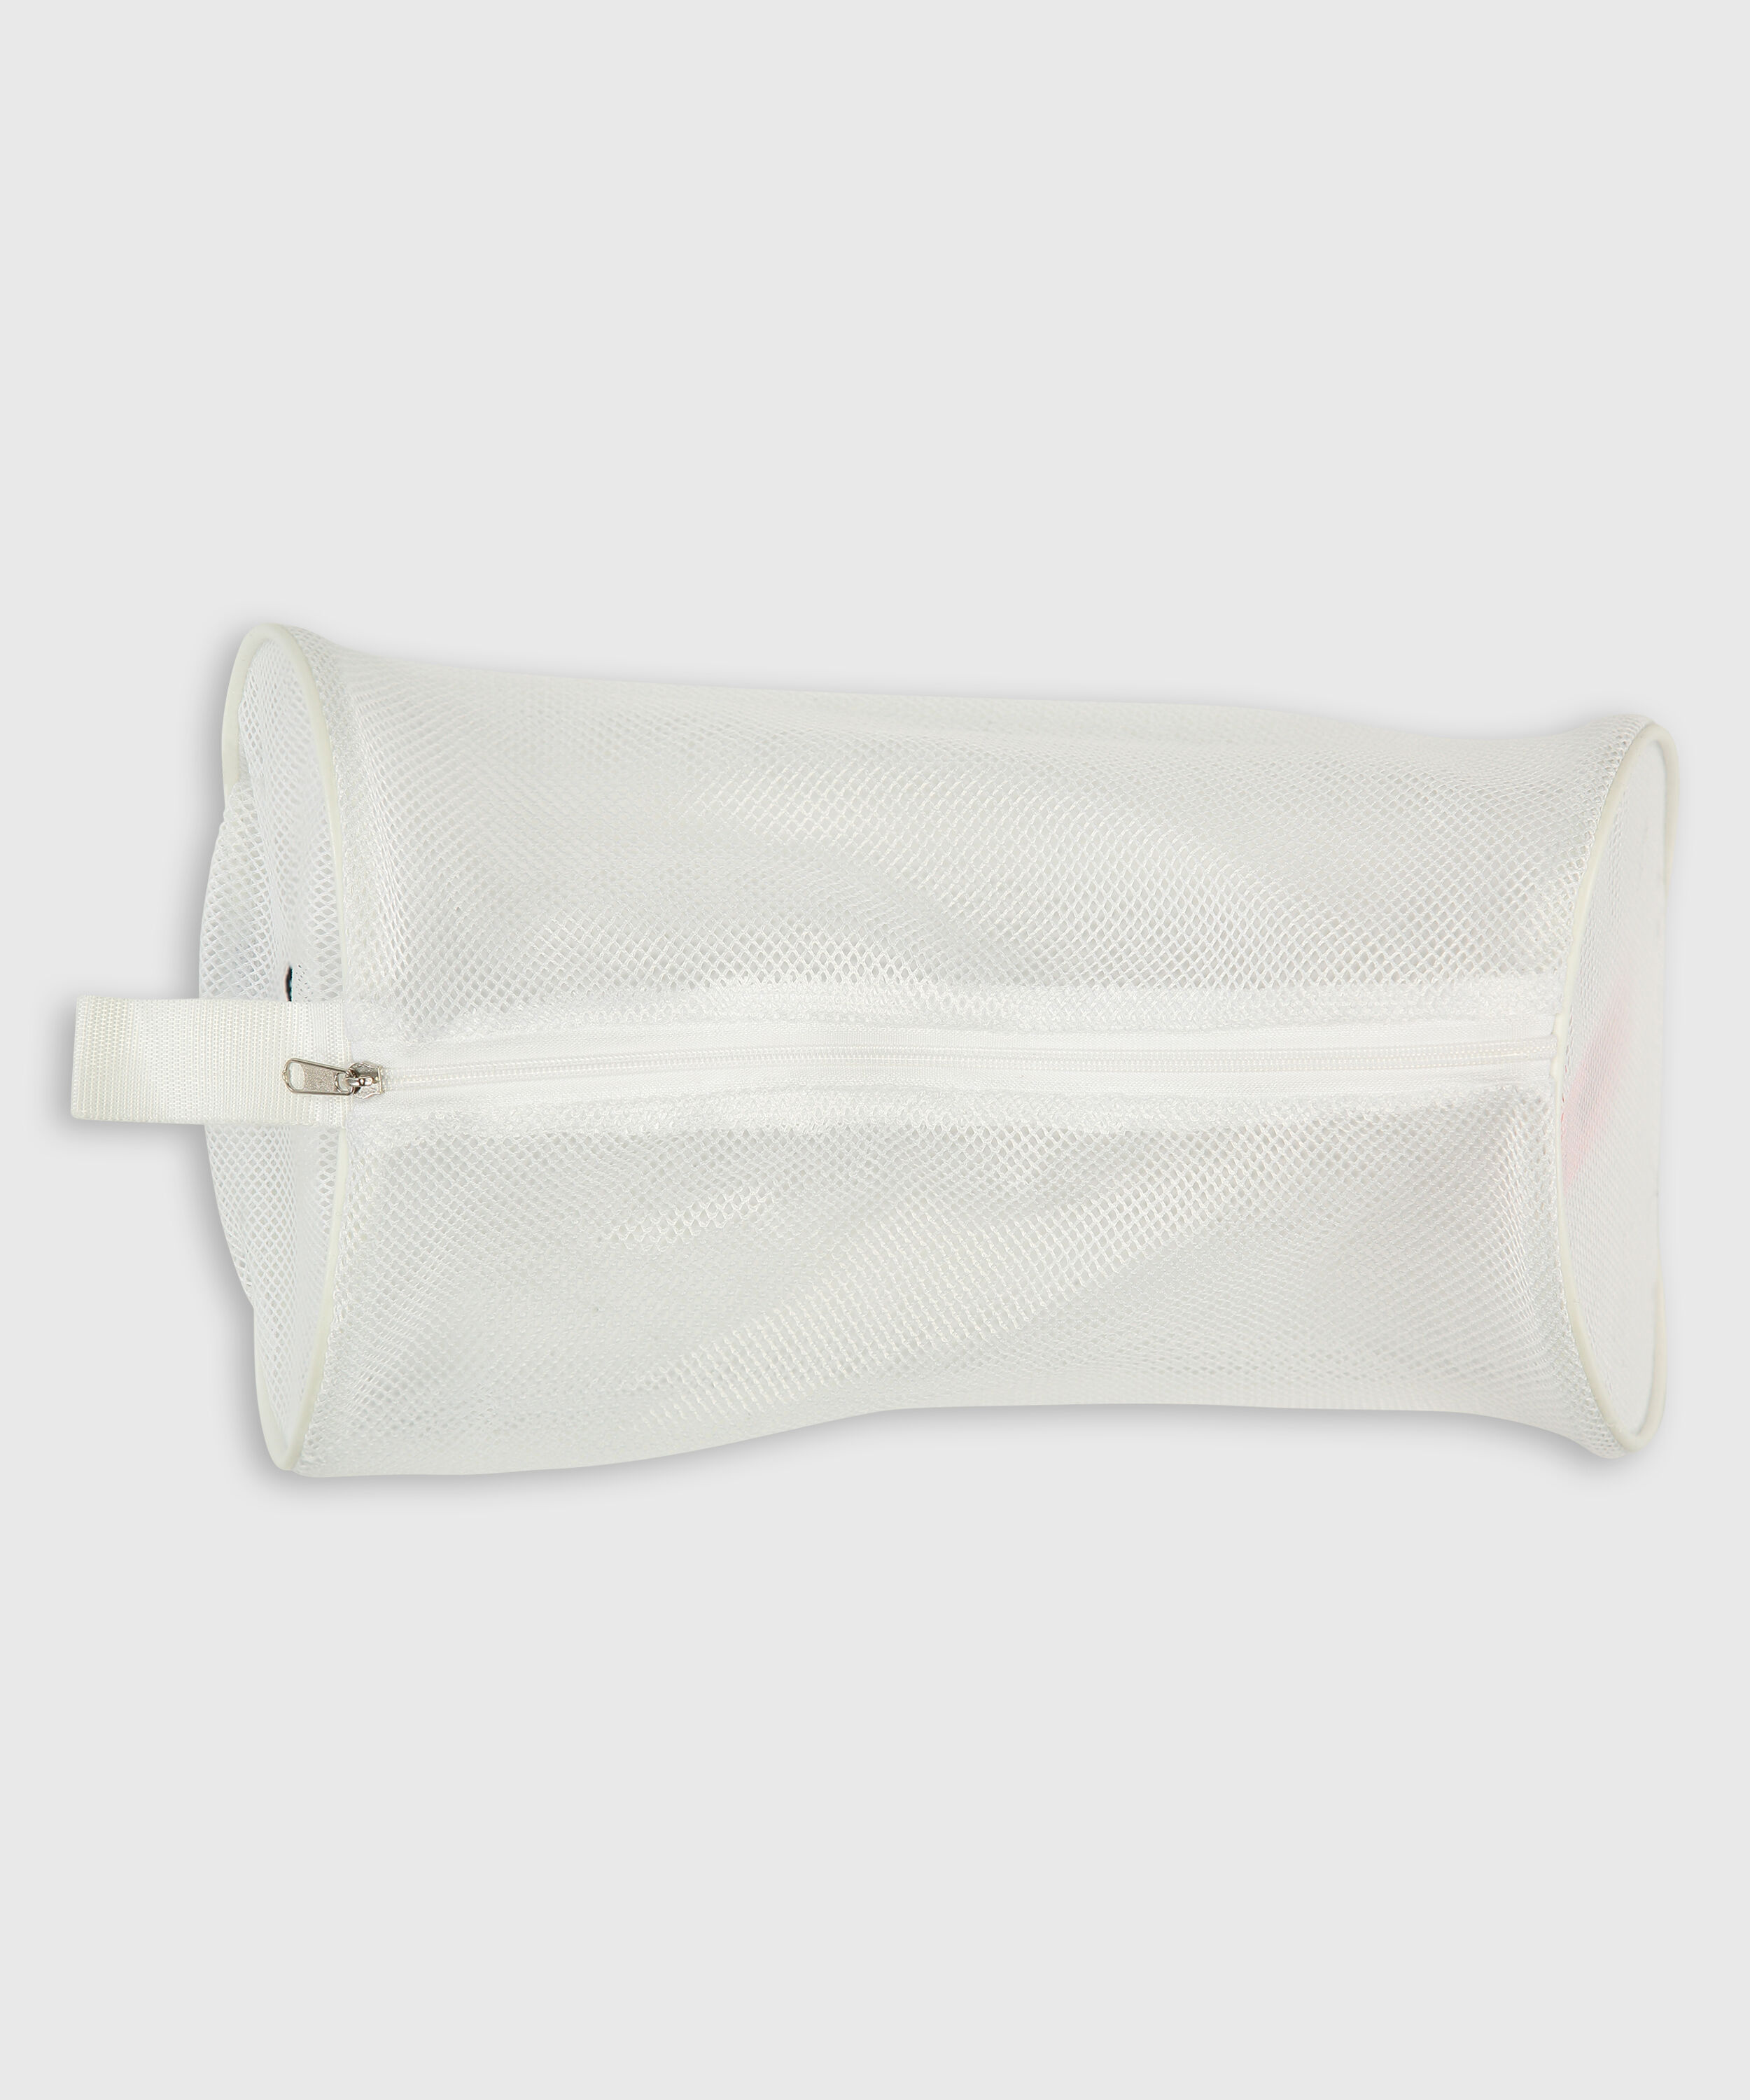 Washable Reusable Lingerie Laundry Bag | Davin & Adley